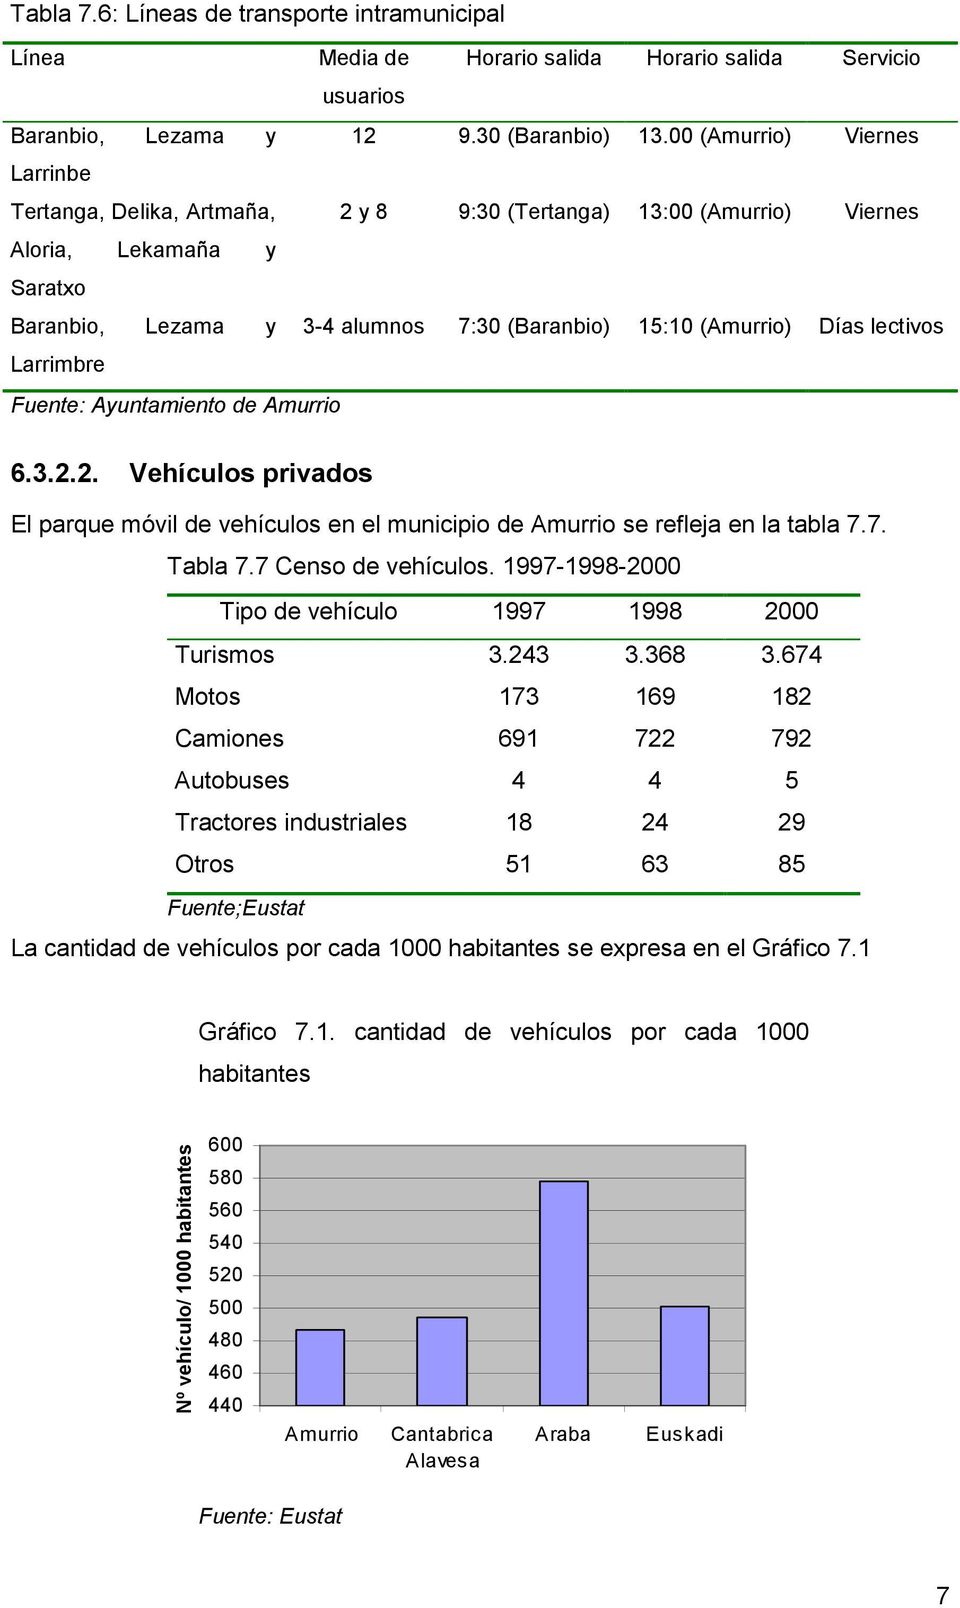 lectivos Larrimbre Fuente: Ayuntamiento de Amurrio 6.3.2.2. Vehículos privados El parque móvil de vehículos en el municipio de Amurrio se refleja en la tabla 7.7. Tabla 7.7 Censo de vehículos.